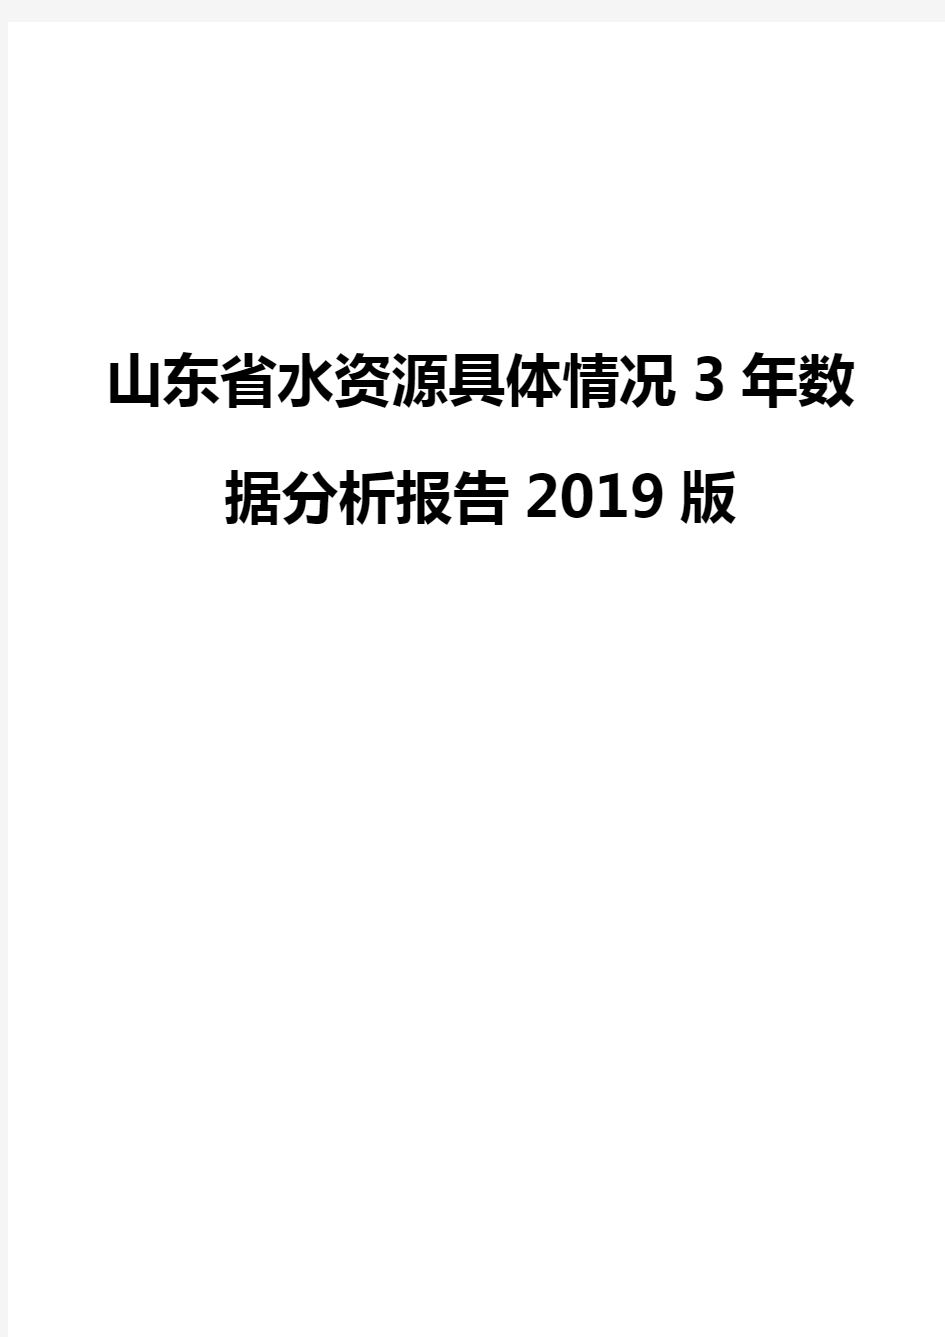 山东省水资源具体情况3年数据分析报告2019版